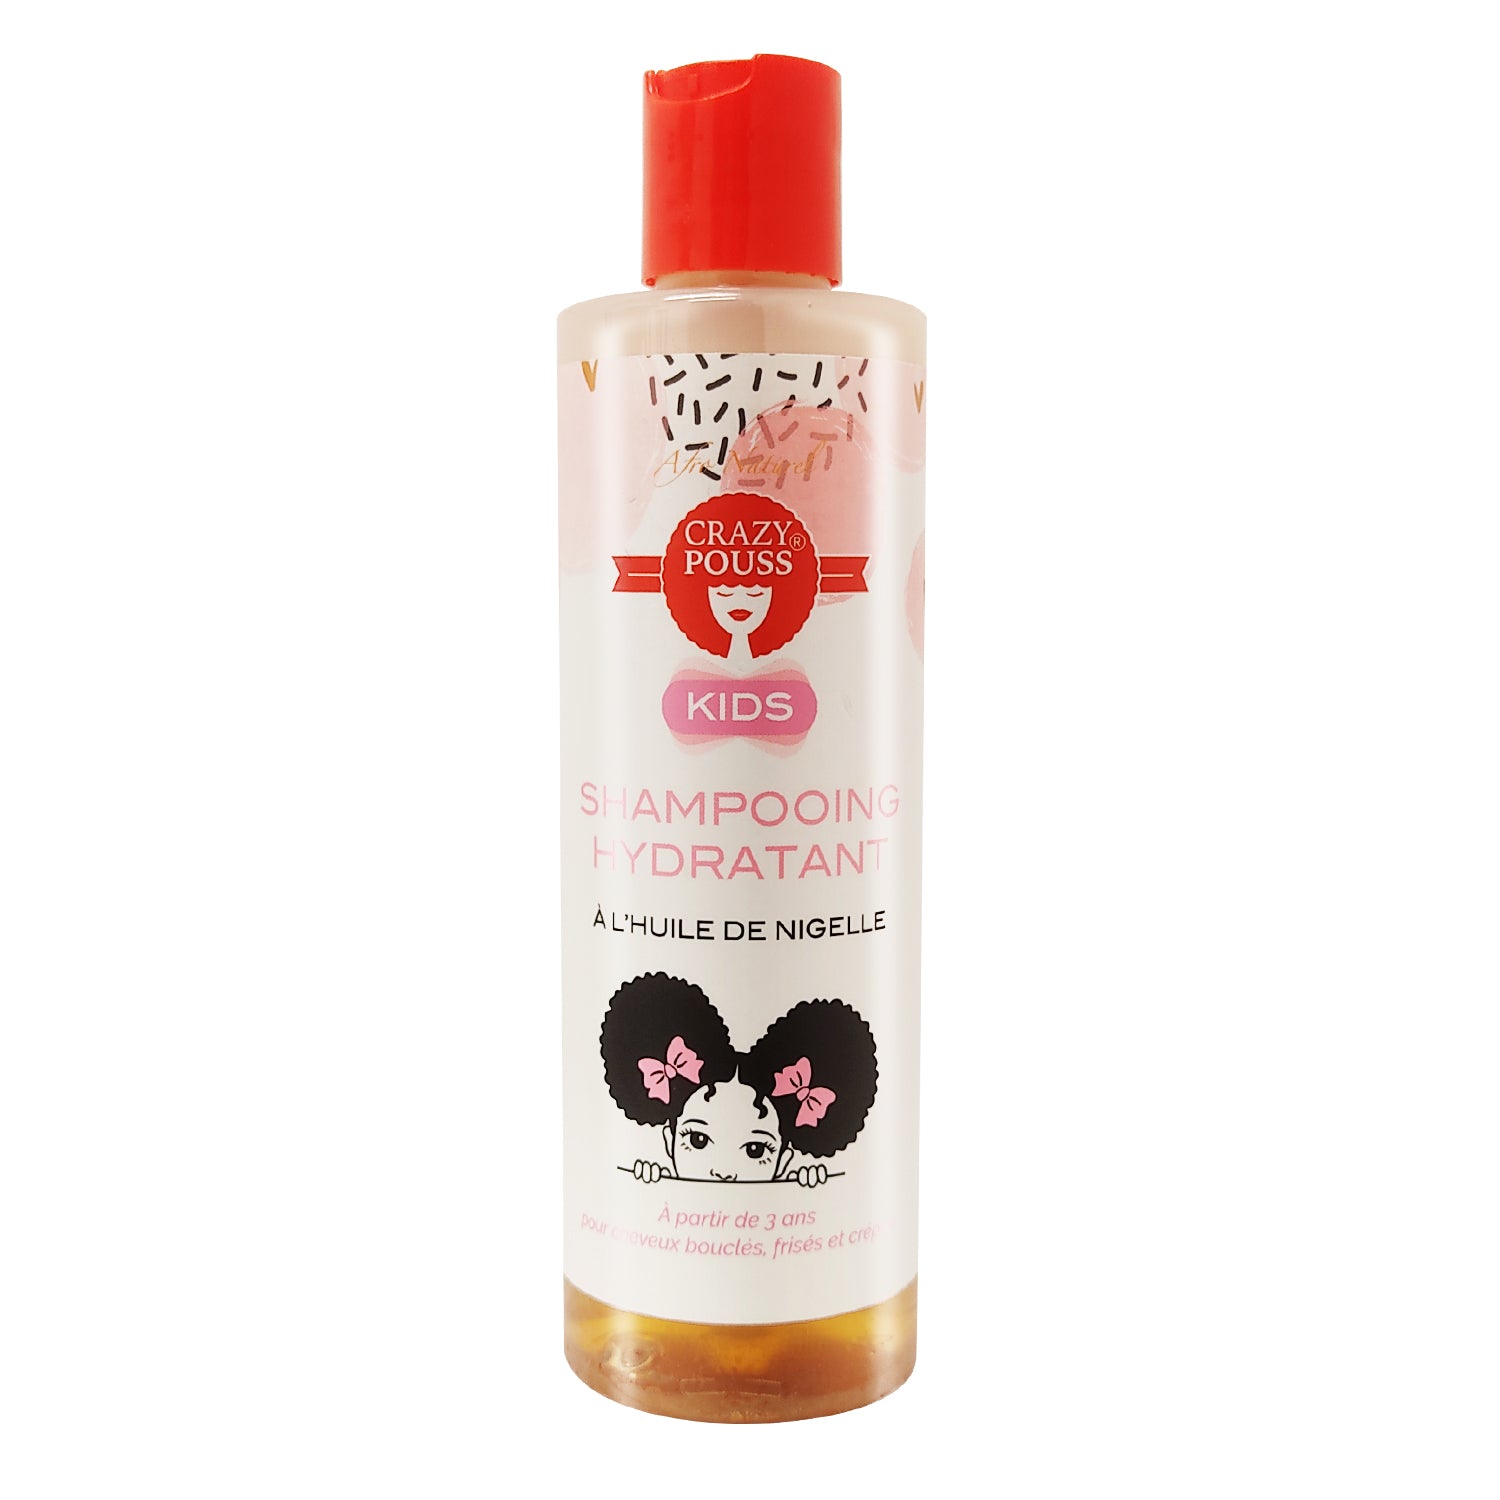 CRAZY POUSS - Shampoing hydratant crazy Kids - Produit capillaire pour prendre soin des cheveux crépus et bouclés de vos enfants